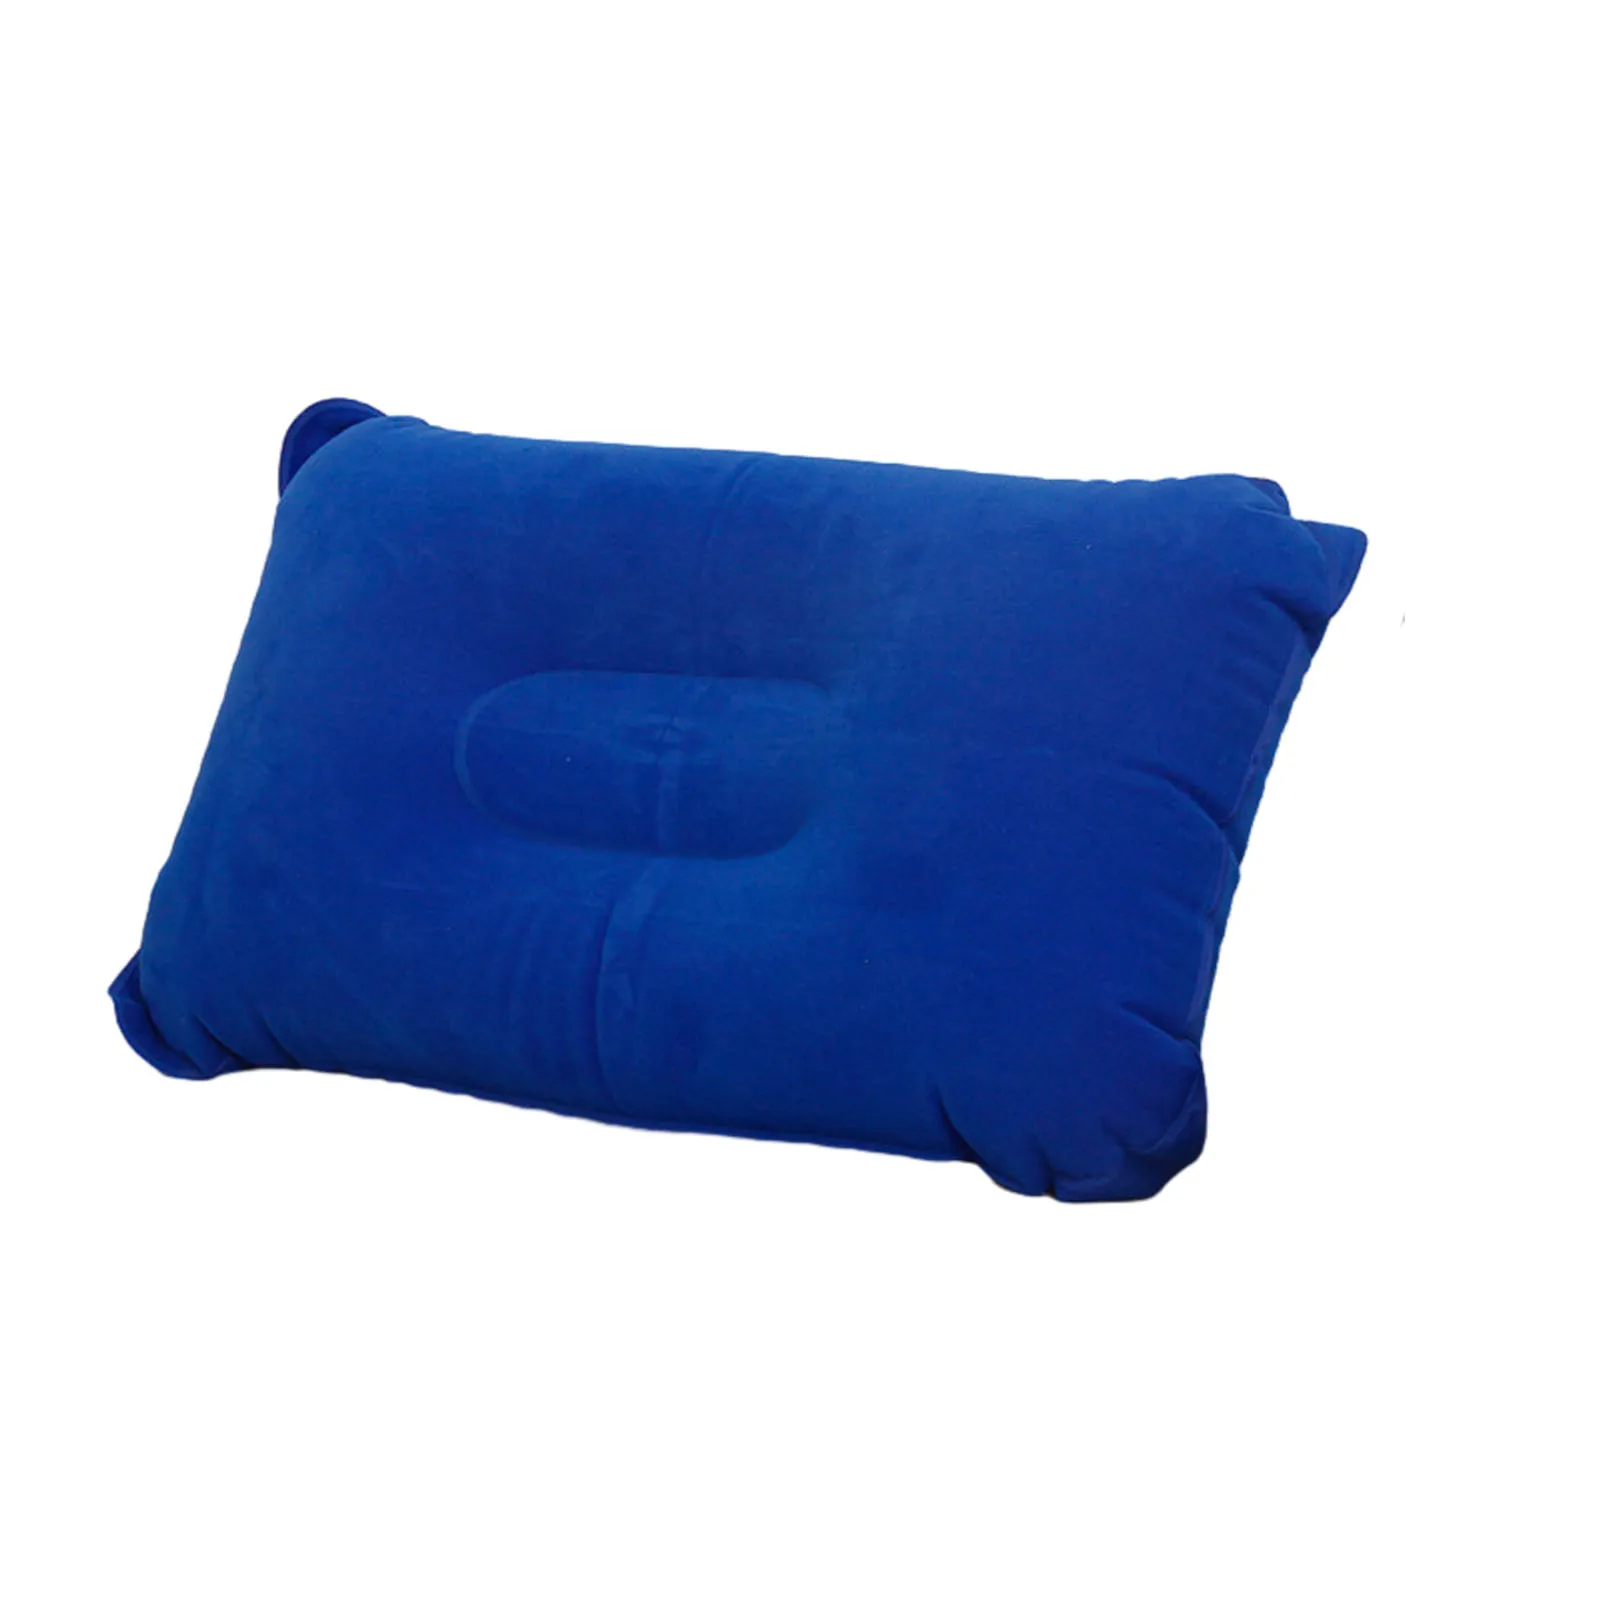 

Ультралегкая надувная подушка для кемпинга и путешествий, удобная складная надувная U-образная подушка для кемпинга, пешего туризма, походов